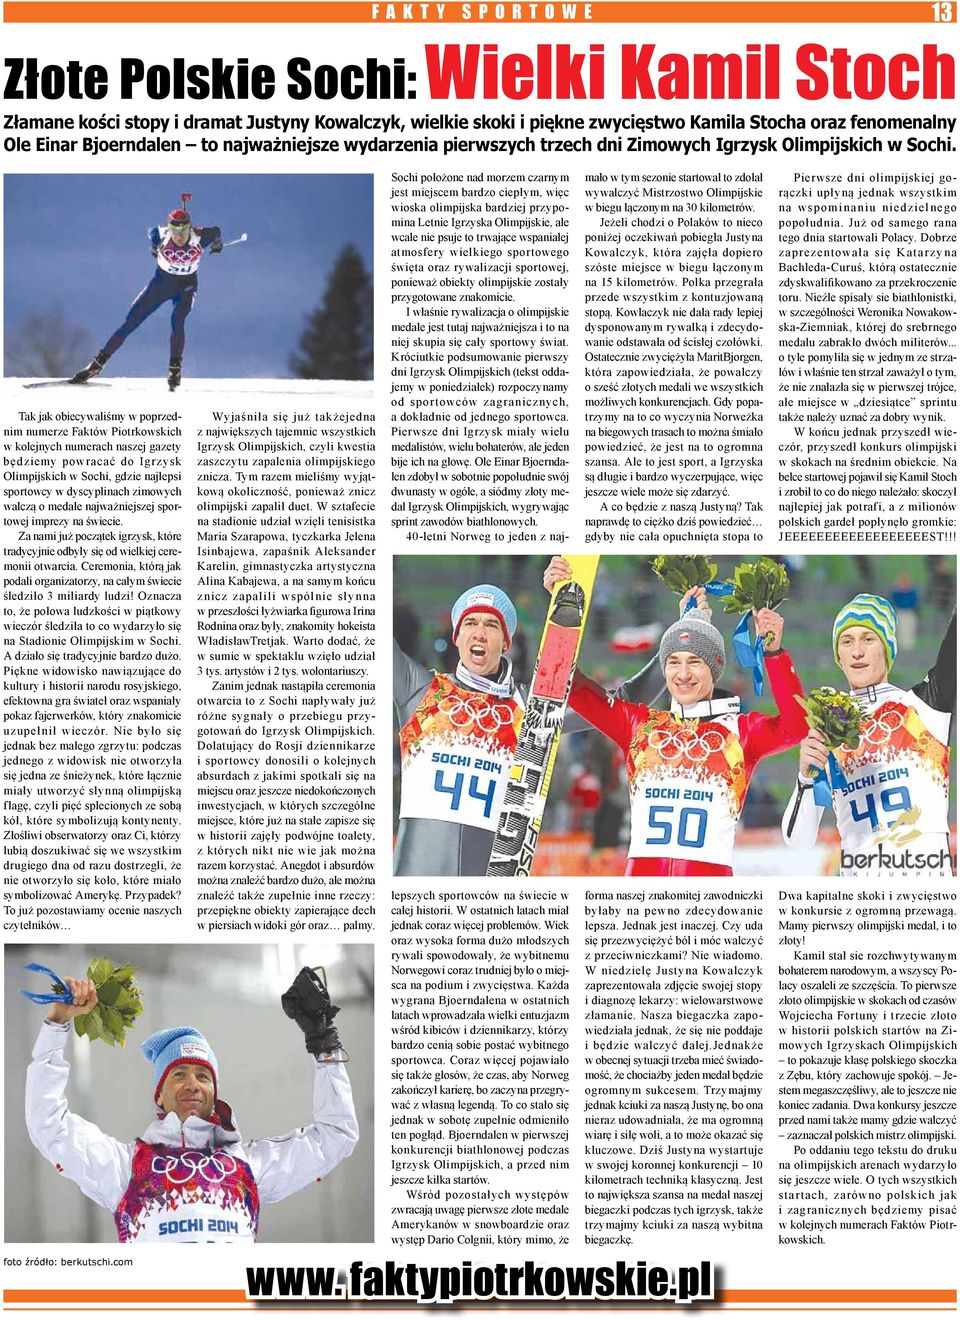 Tak jak obiecywaliśmy w poprzednim numerze Faktów Piotrkowskich w kolejnych numerach naszej gazety będziemy powracać do Igrzysk Olimpijskich w Sochi, gdzie najlepsi sportowcy w dyscyplinach zimowych